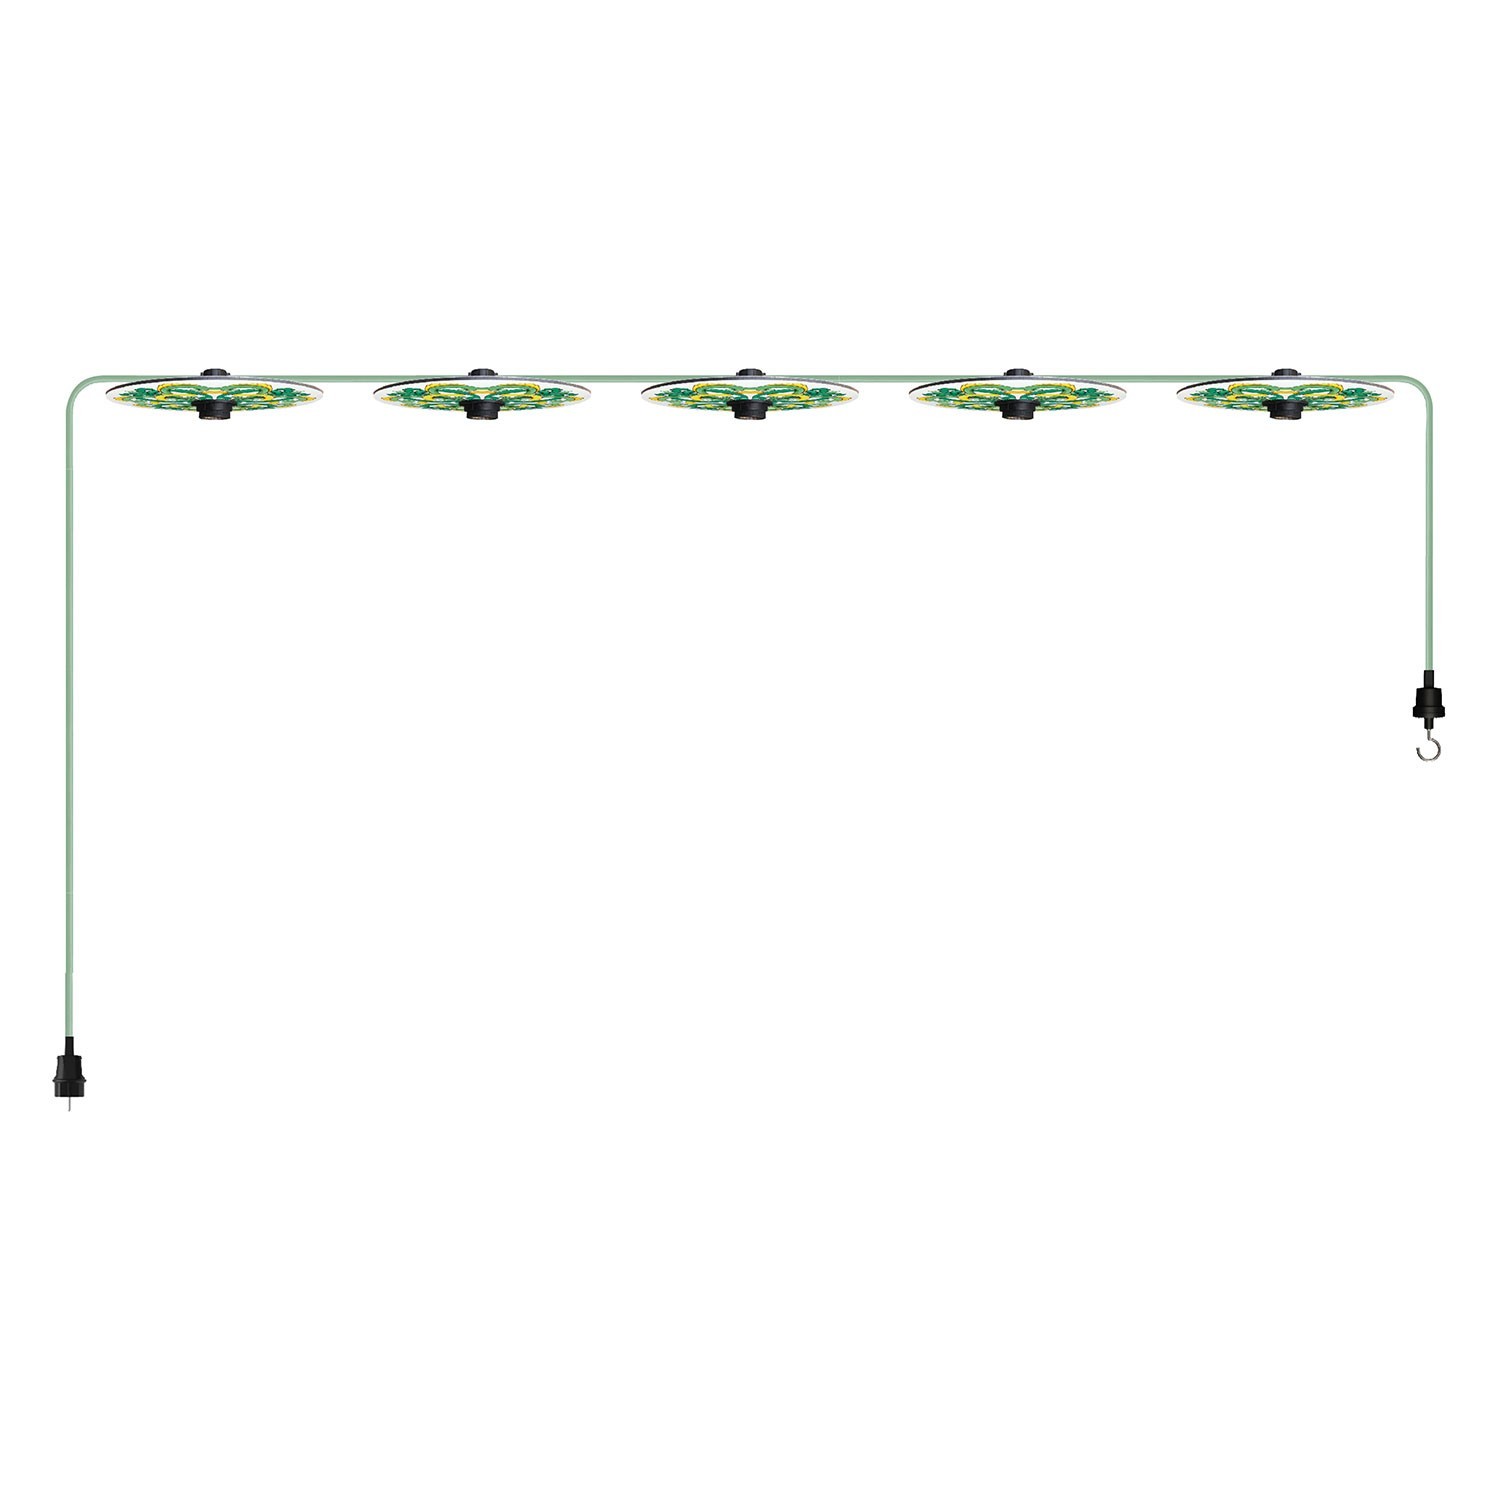 Maioliche' String Light Lumet System fra 7,5 m med stofkabel, 5 lampeholdere og lampeskærme, krog og sort stik